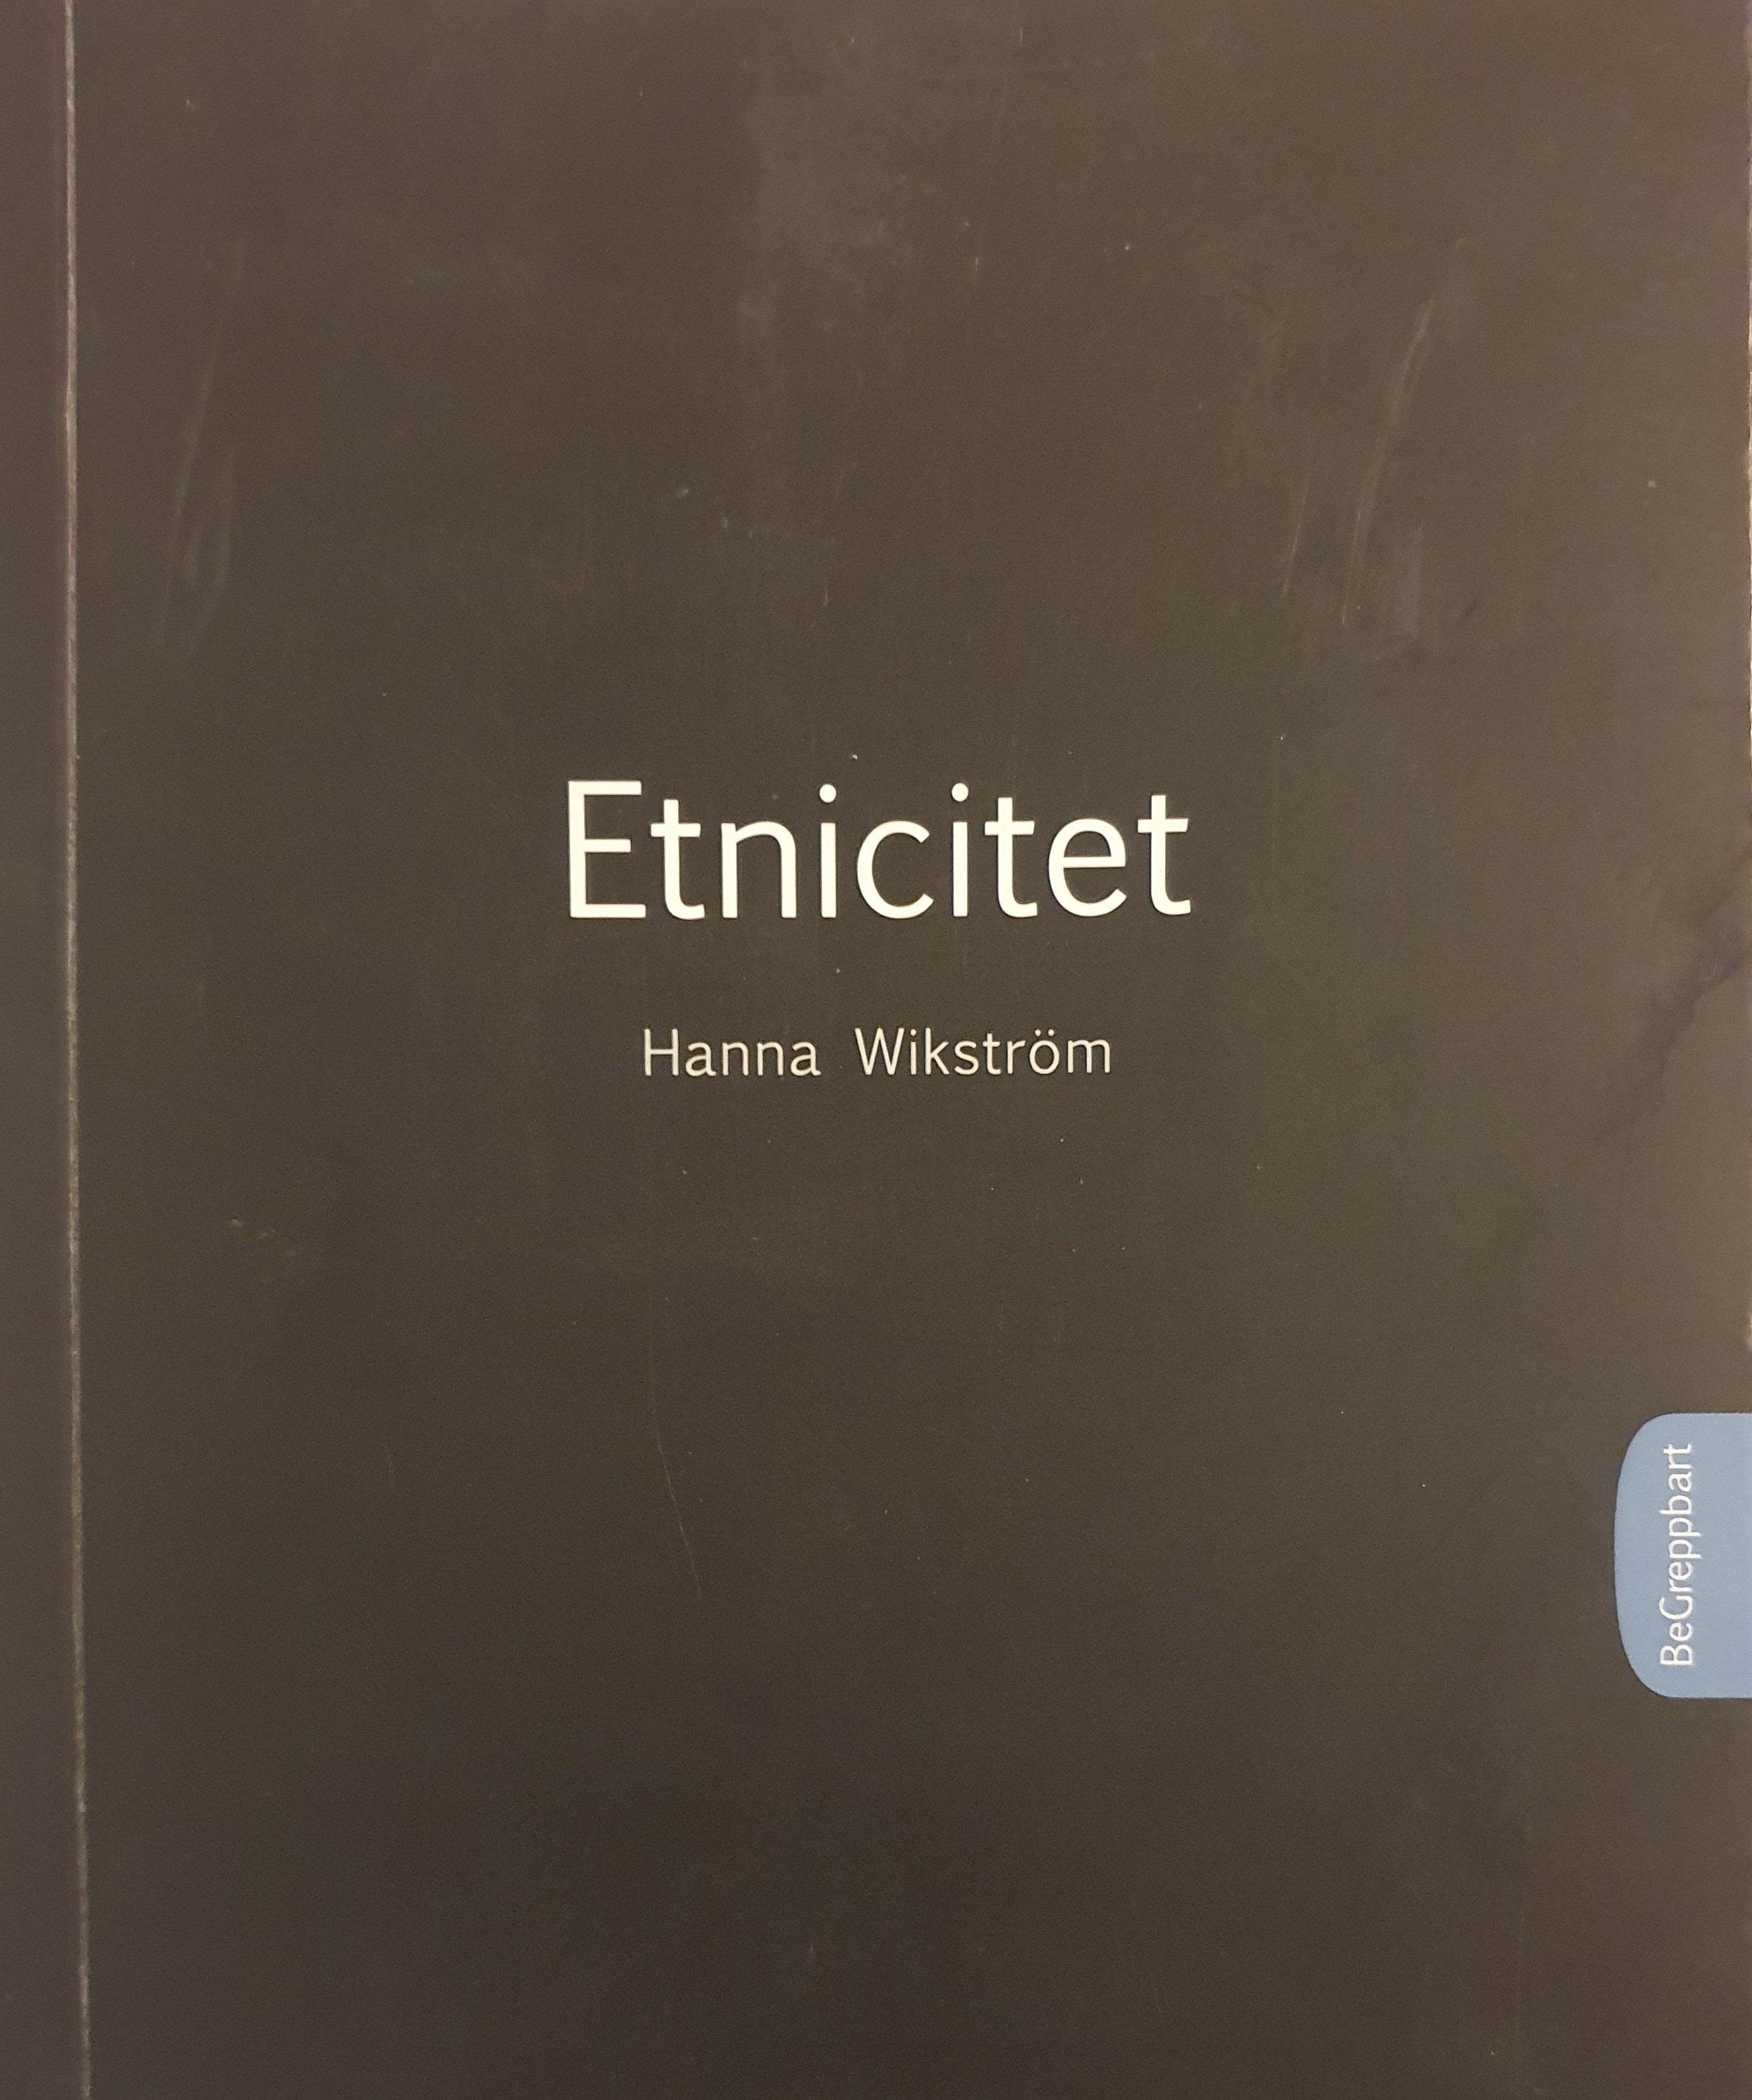 Etnictitet; Hanna Wikström; 2009